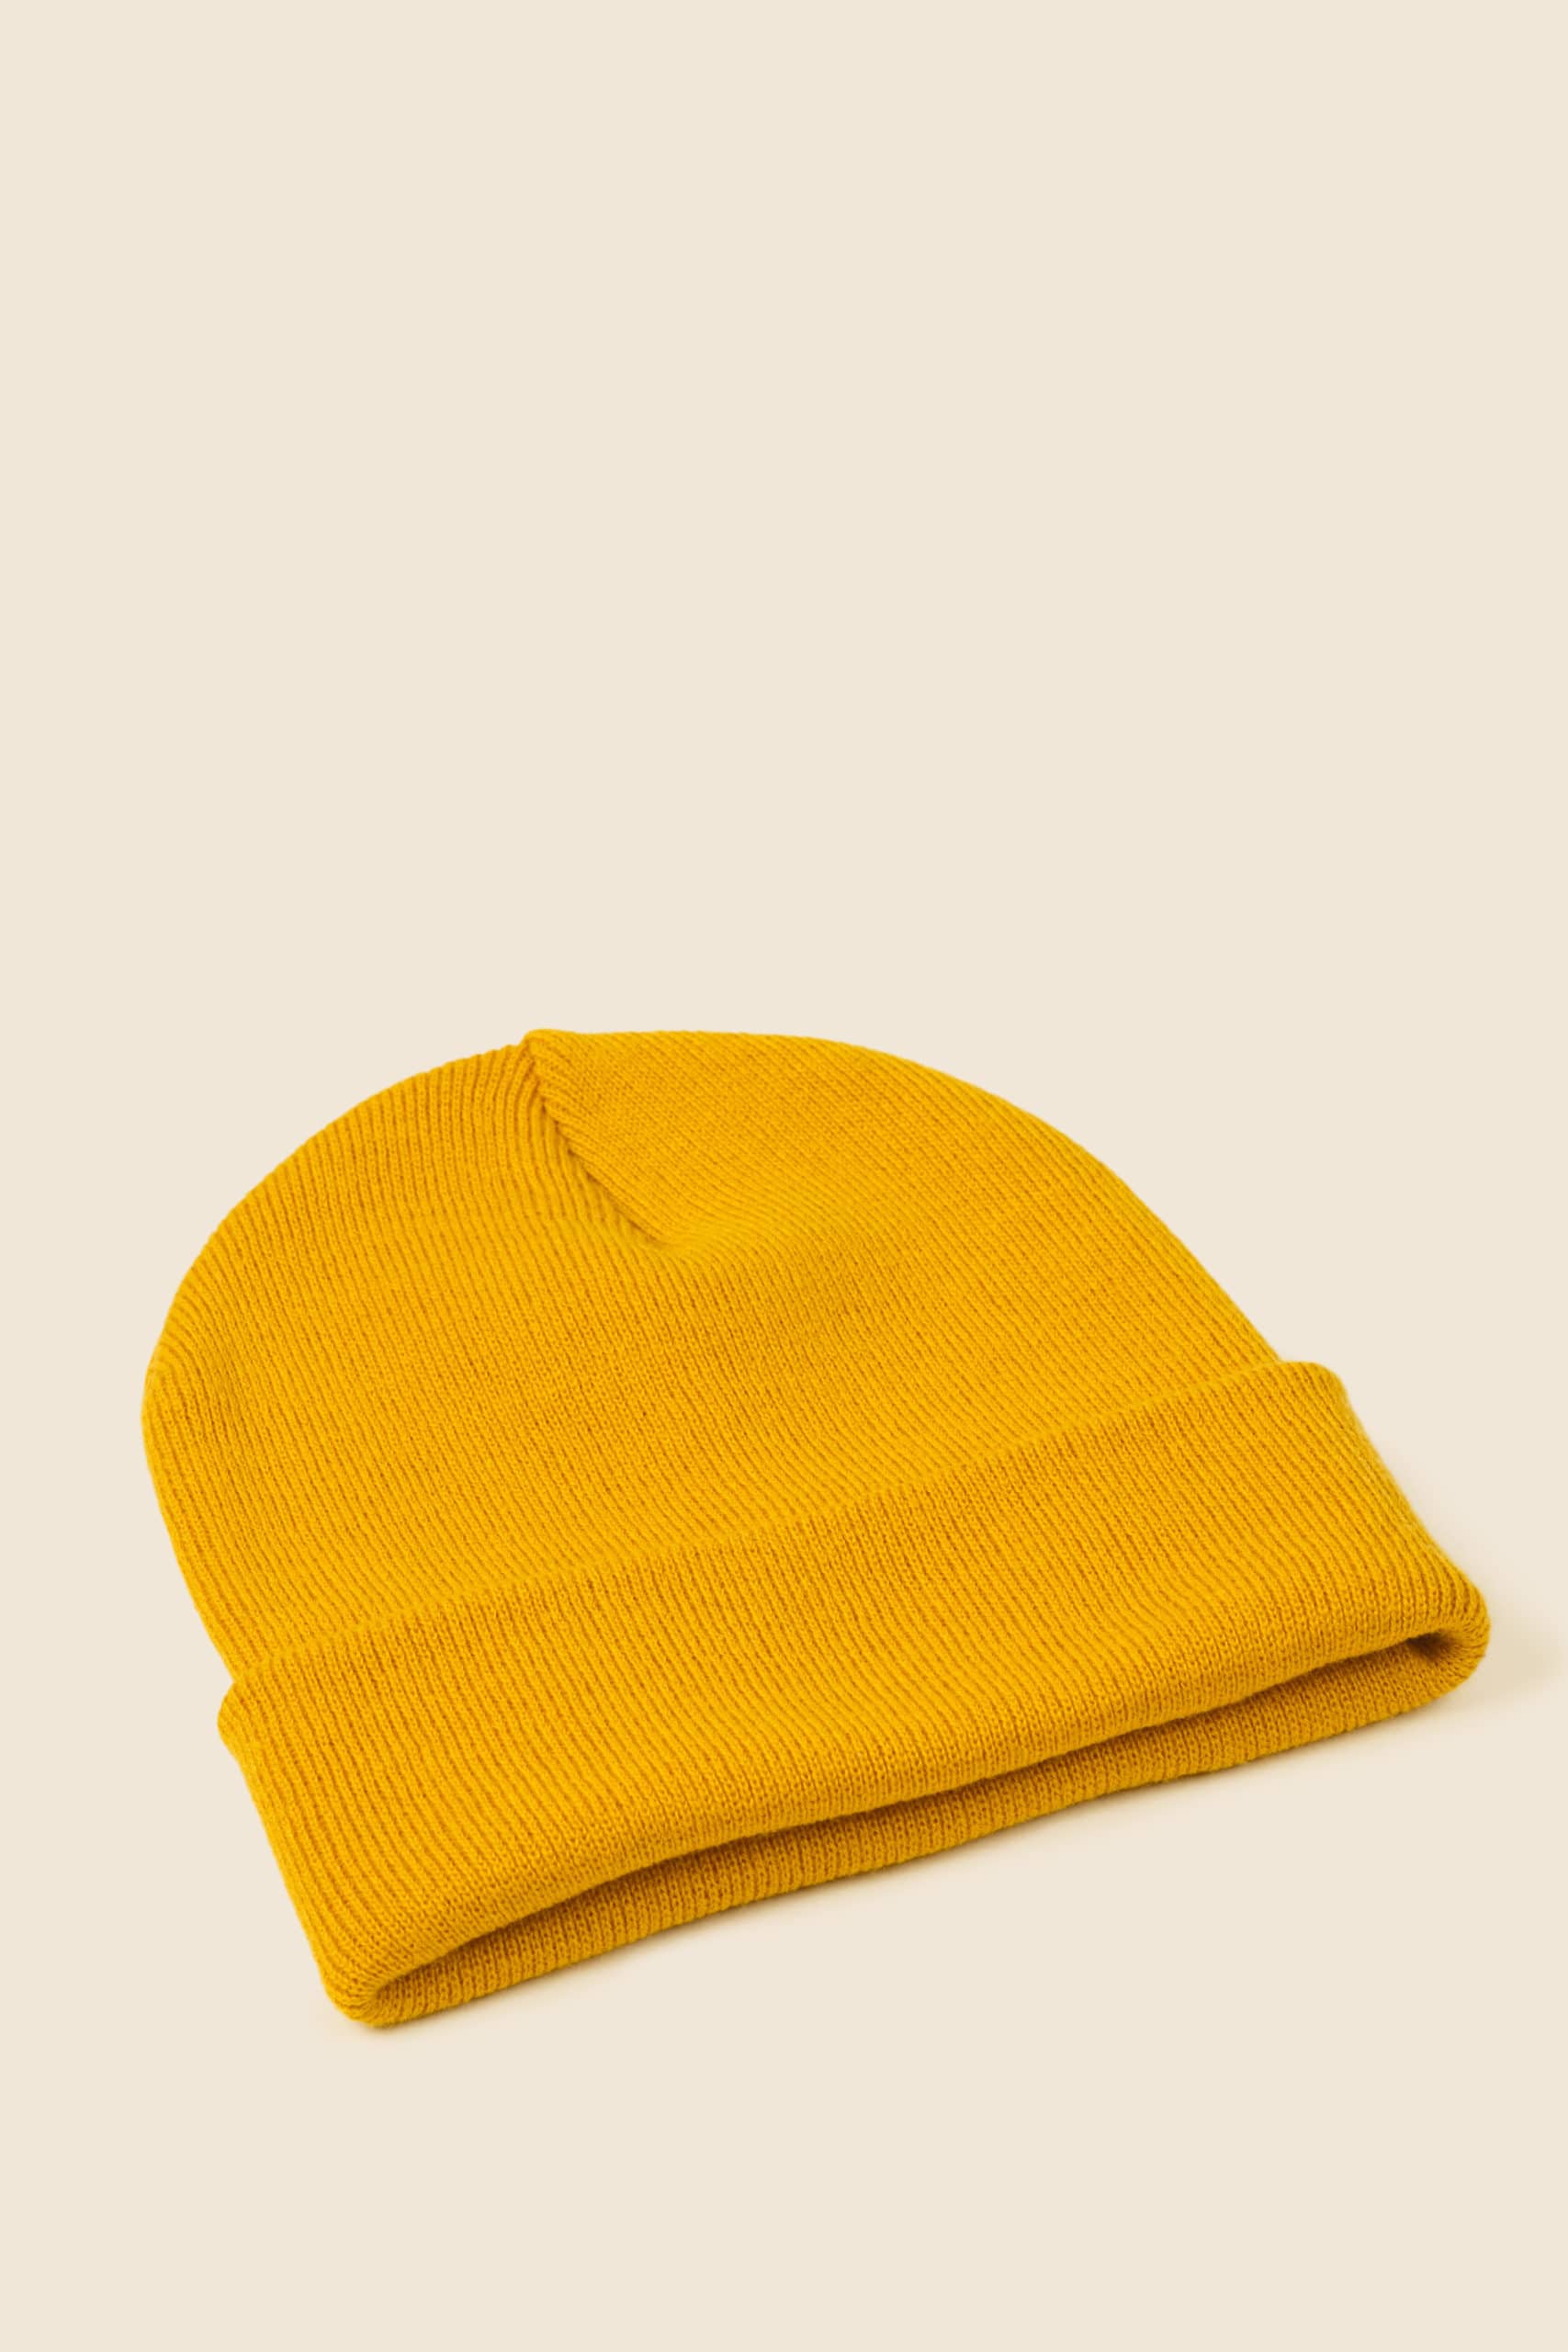 bonnet acrylique jaune personnalisable - Icone Design